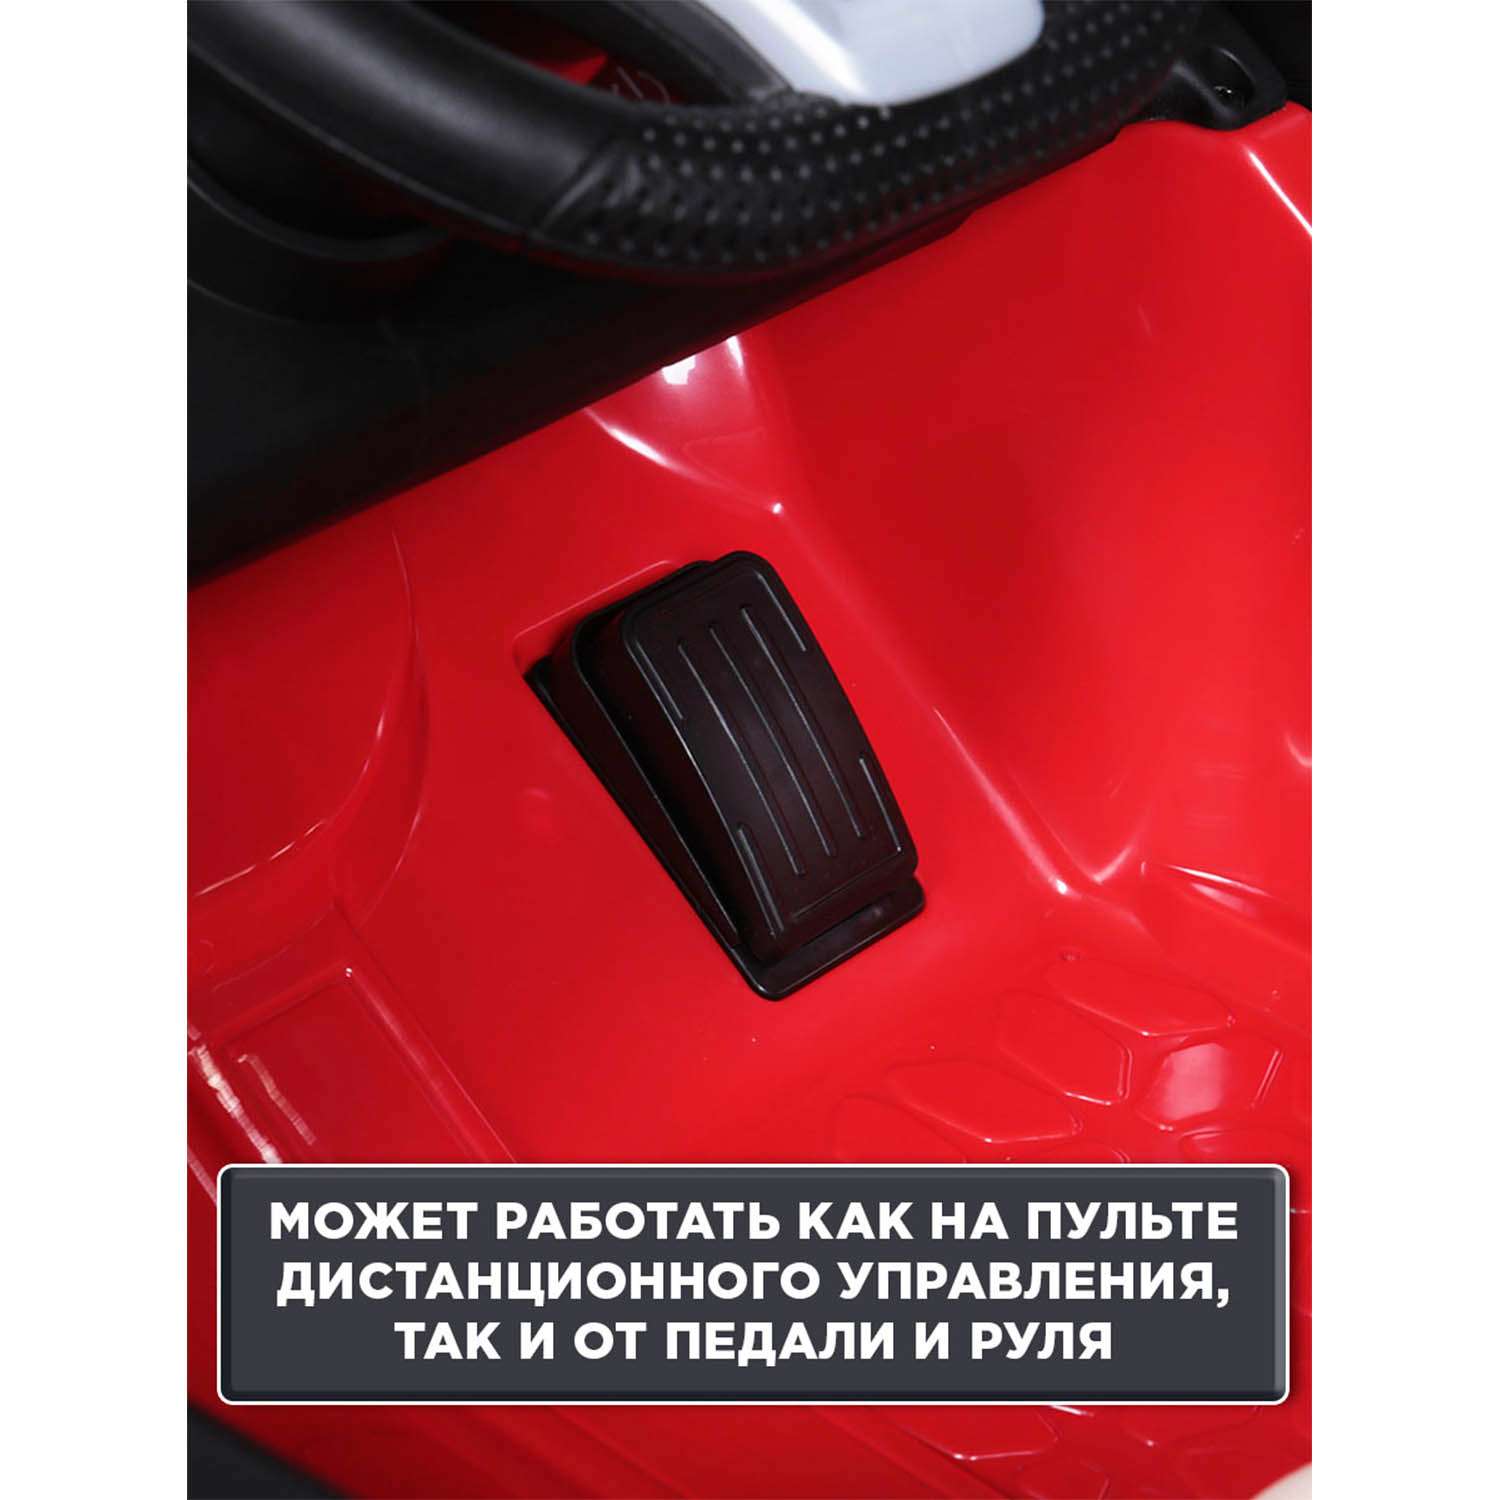 Электромобиль BabyCare Mercedes резиновые колеса красный - фото 11